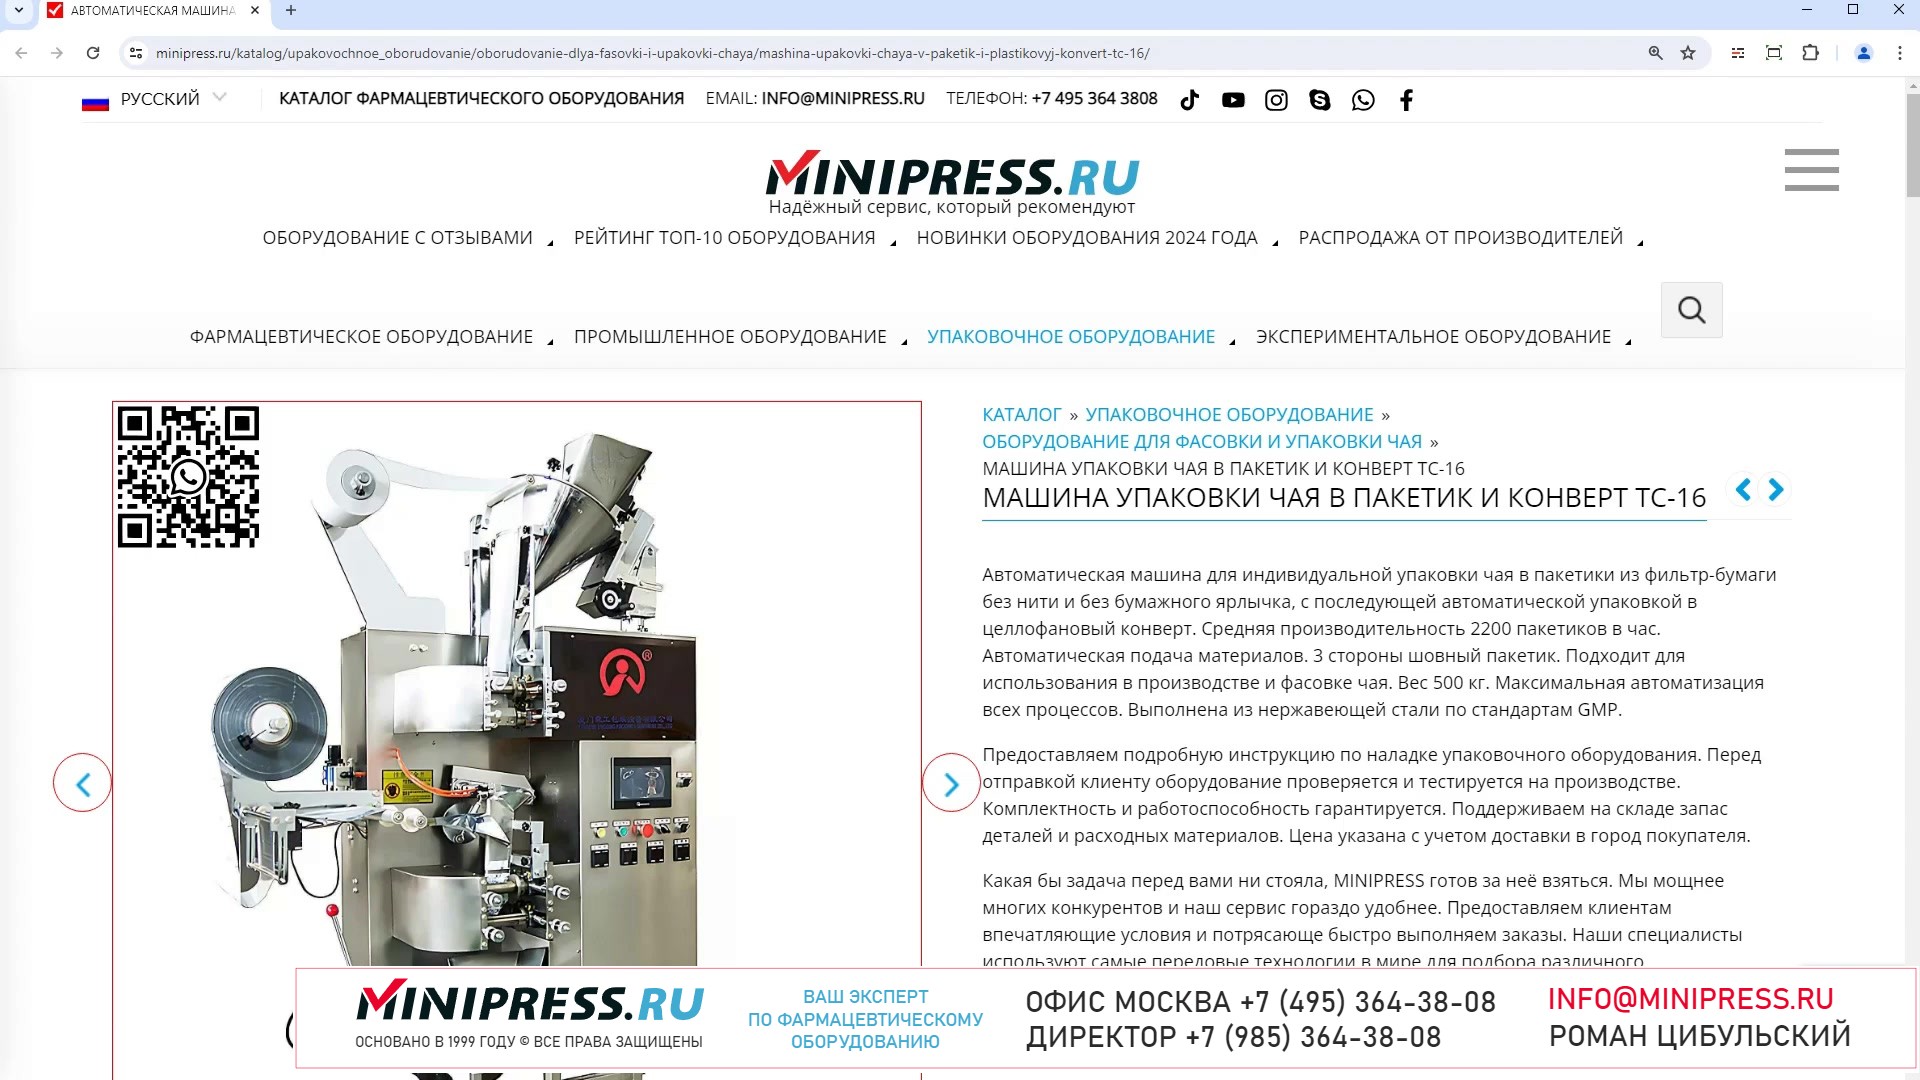 Minipress.ru Машина упаковки чая в пакетик и конверт TC-16